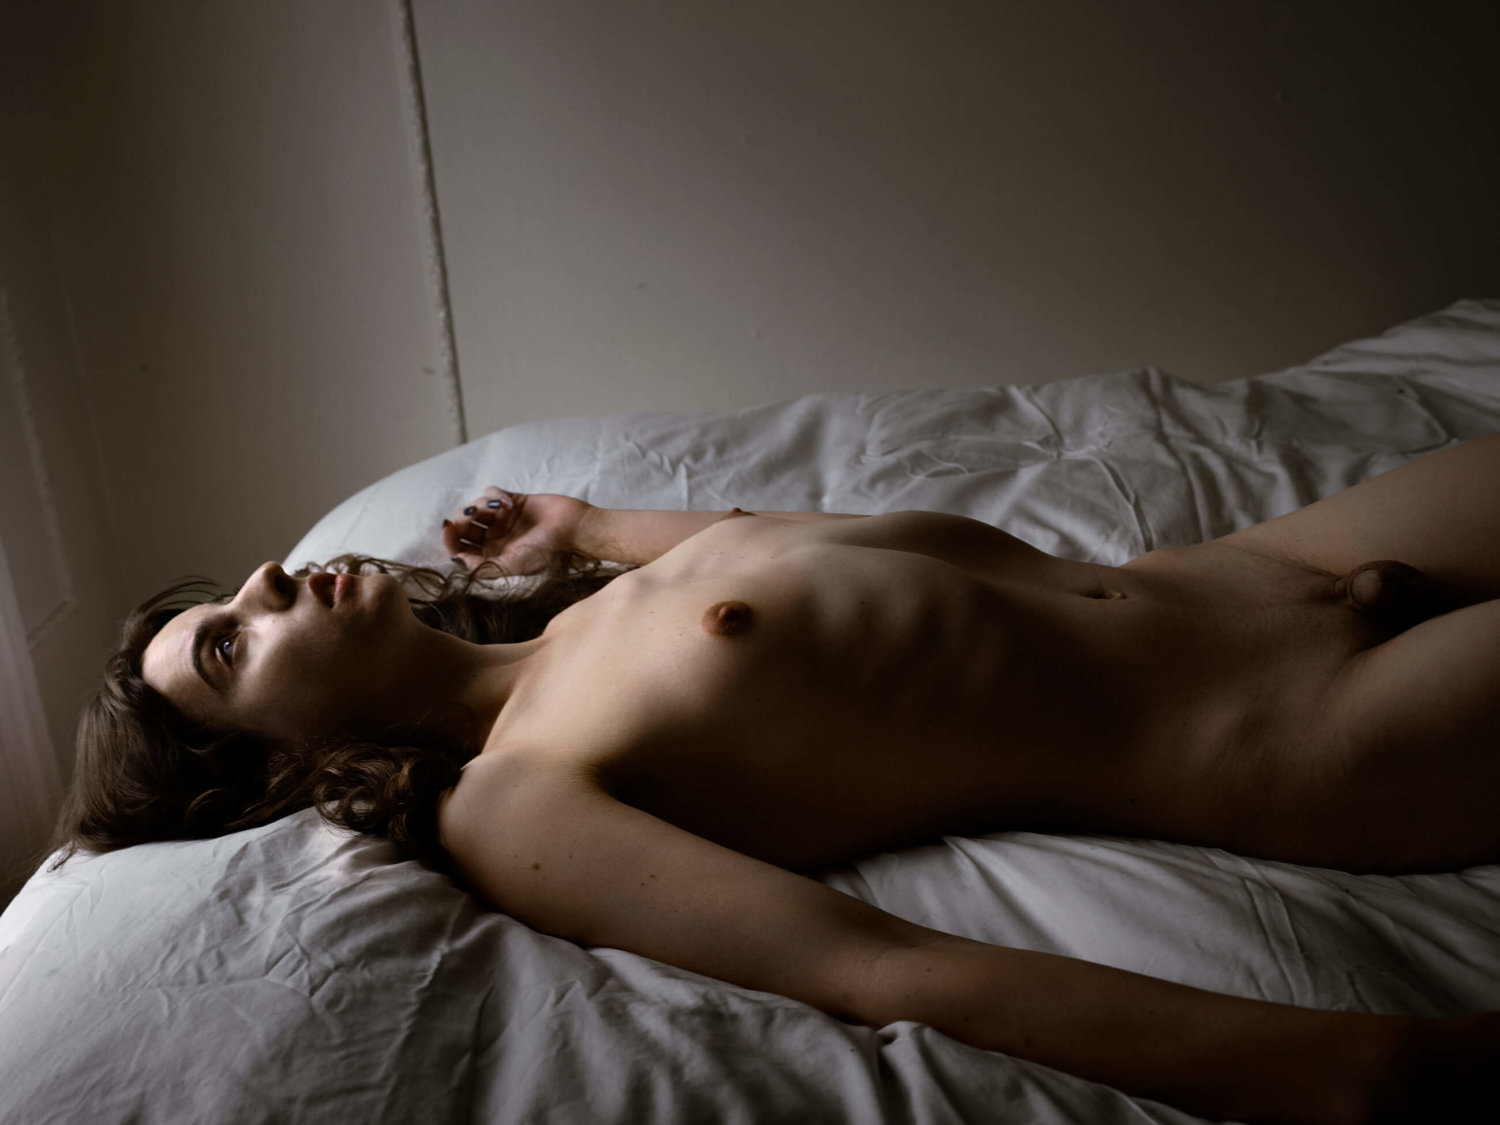 Eine nackte Transfrau liegt mit dem Rücken auf dem Bett, auf einer weißen Bettdecke, die Arme sind ausgestreckt und der Blick nach oben zur Decke gerichtet, auf das Gesicht und den Oberkörper fällt Licht